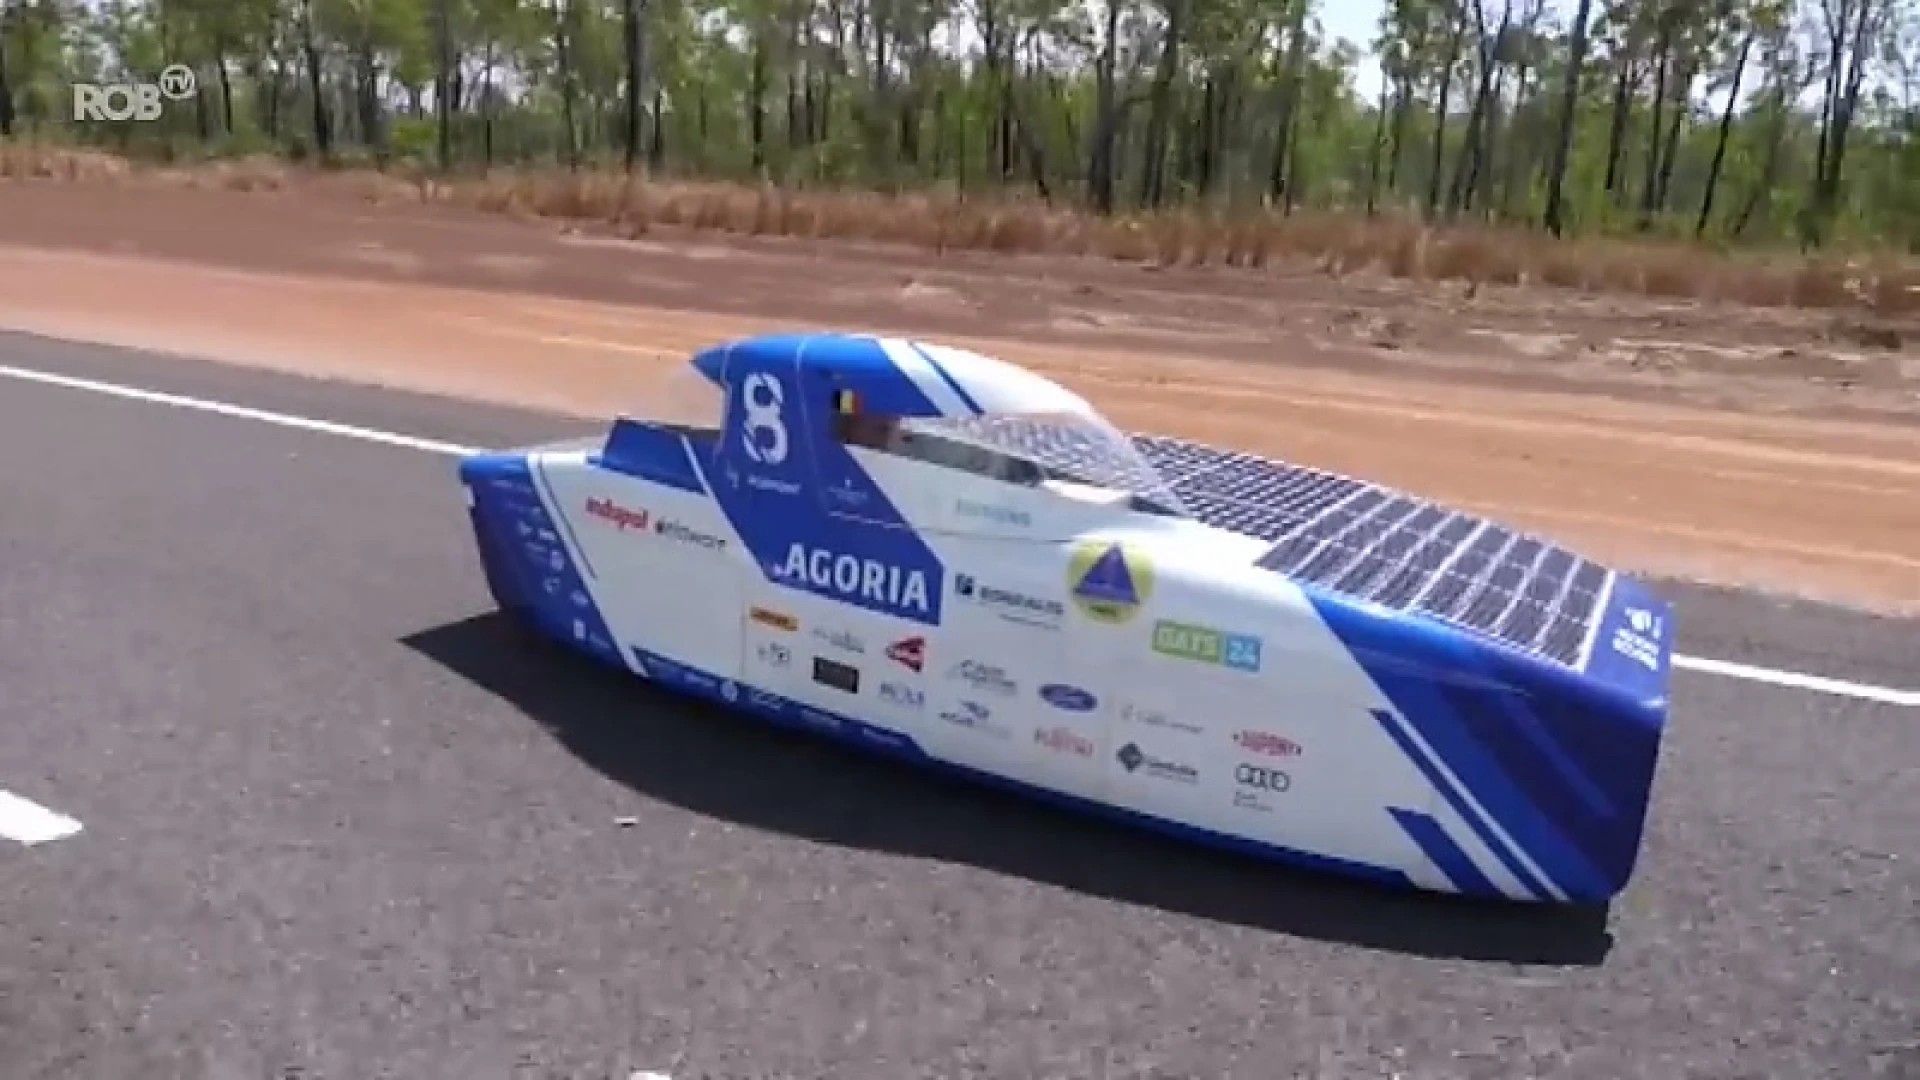 Solar Team KU Leuven is helemaal klaar voor WK voor zonnewagens in Australië